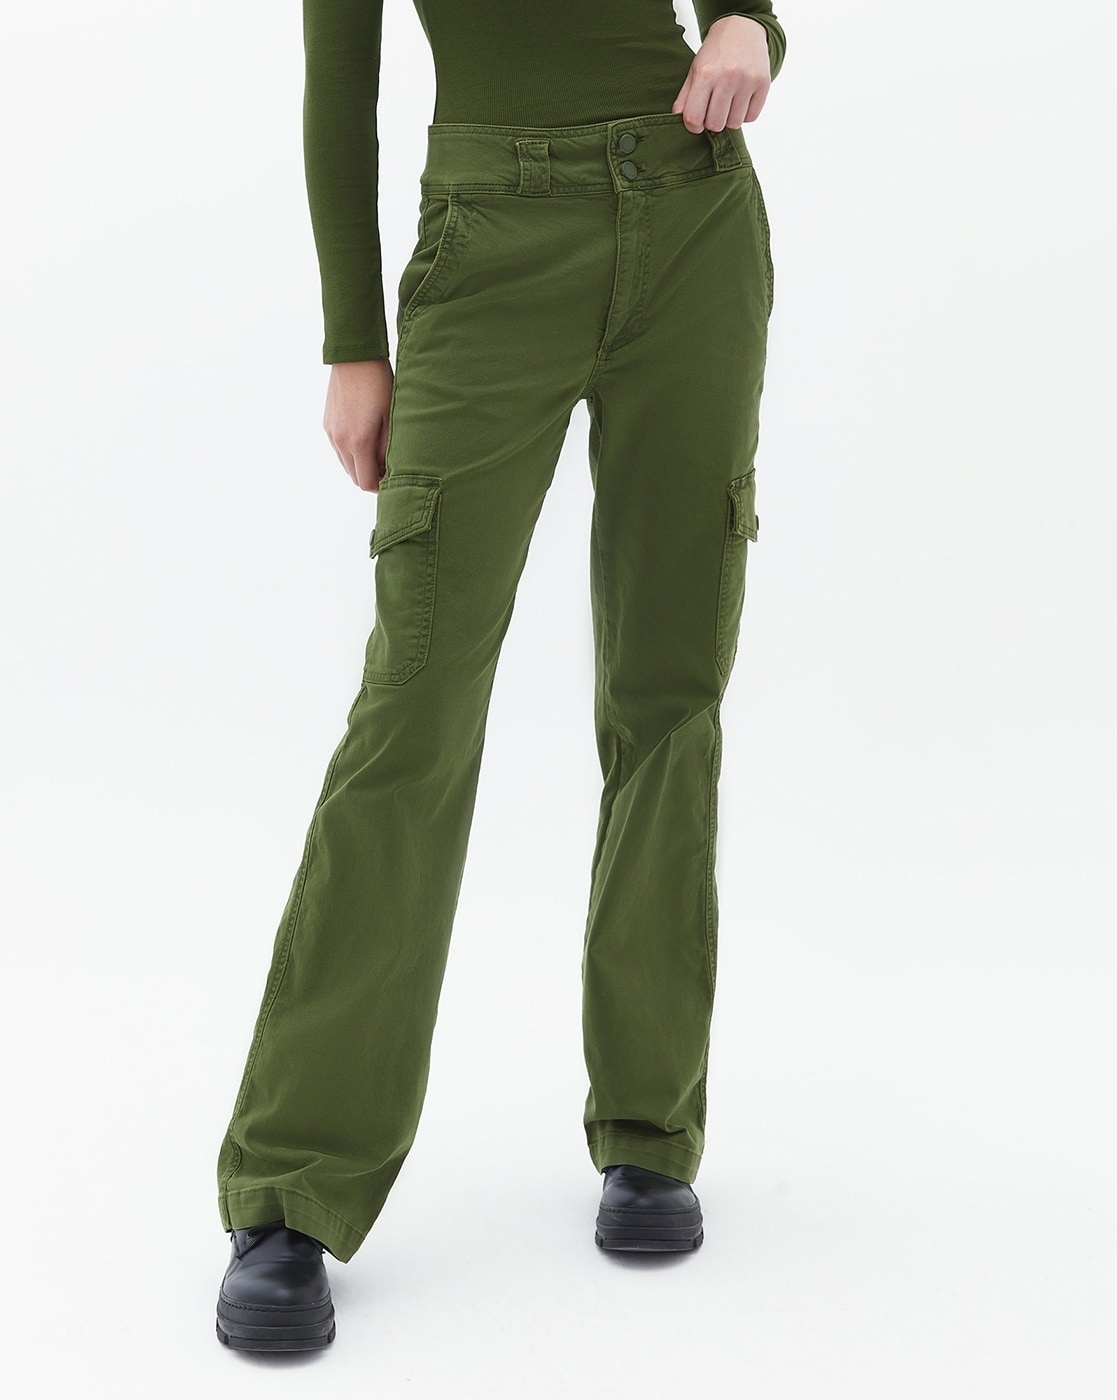 Olive Jane Cargo Pants | Pants women fashion, Pants for women, Fashion  bottoms